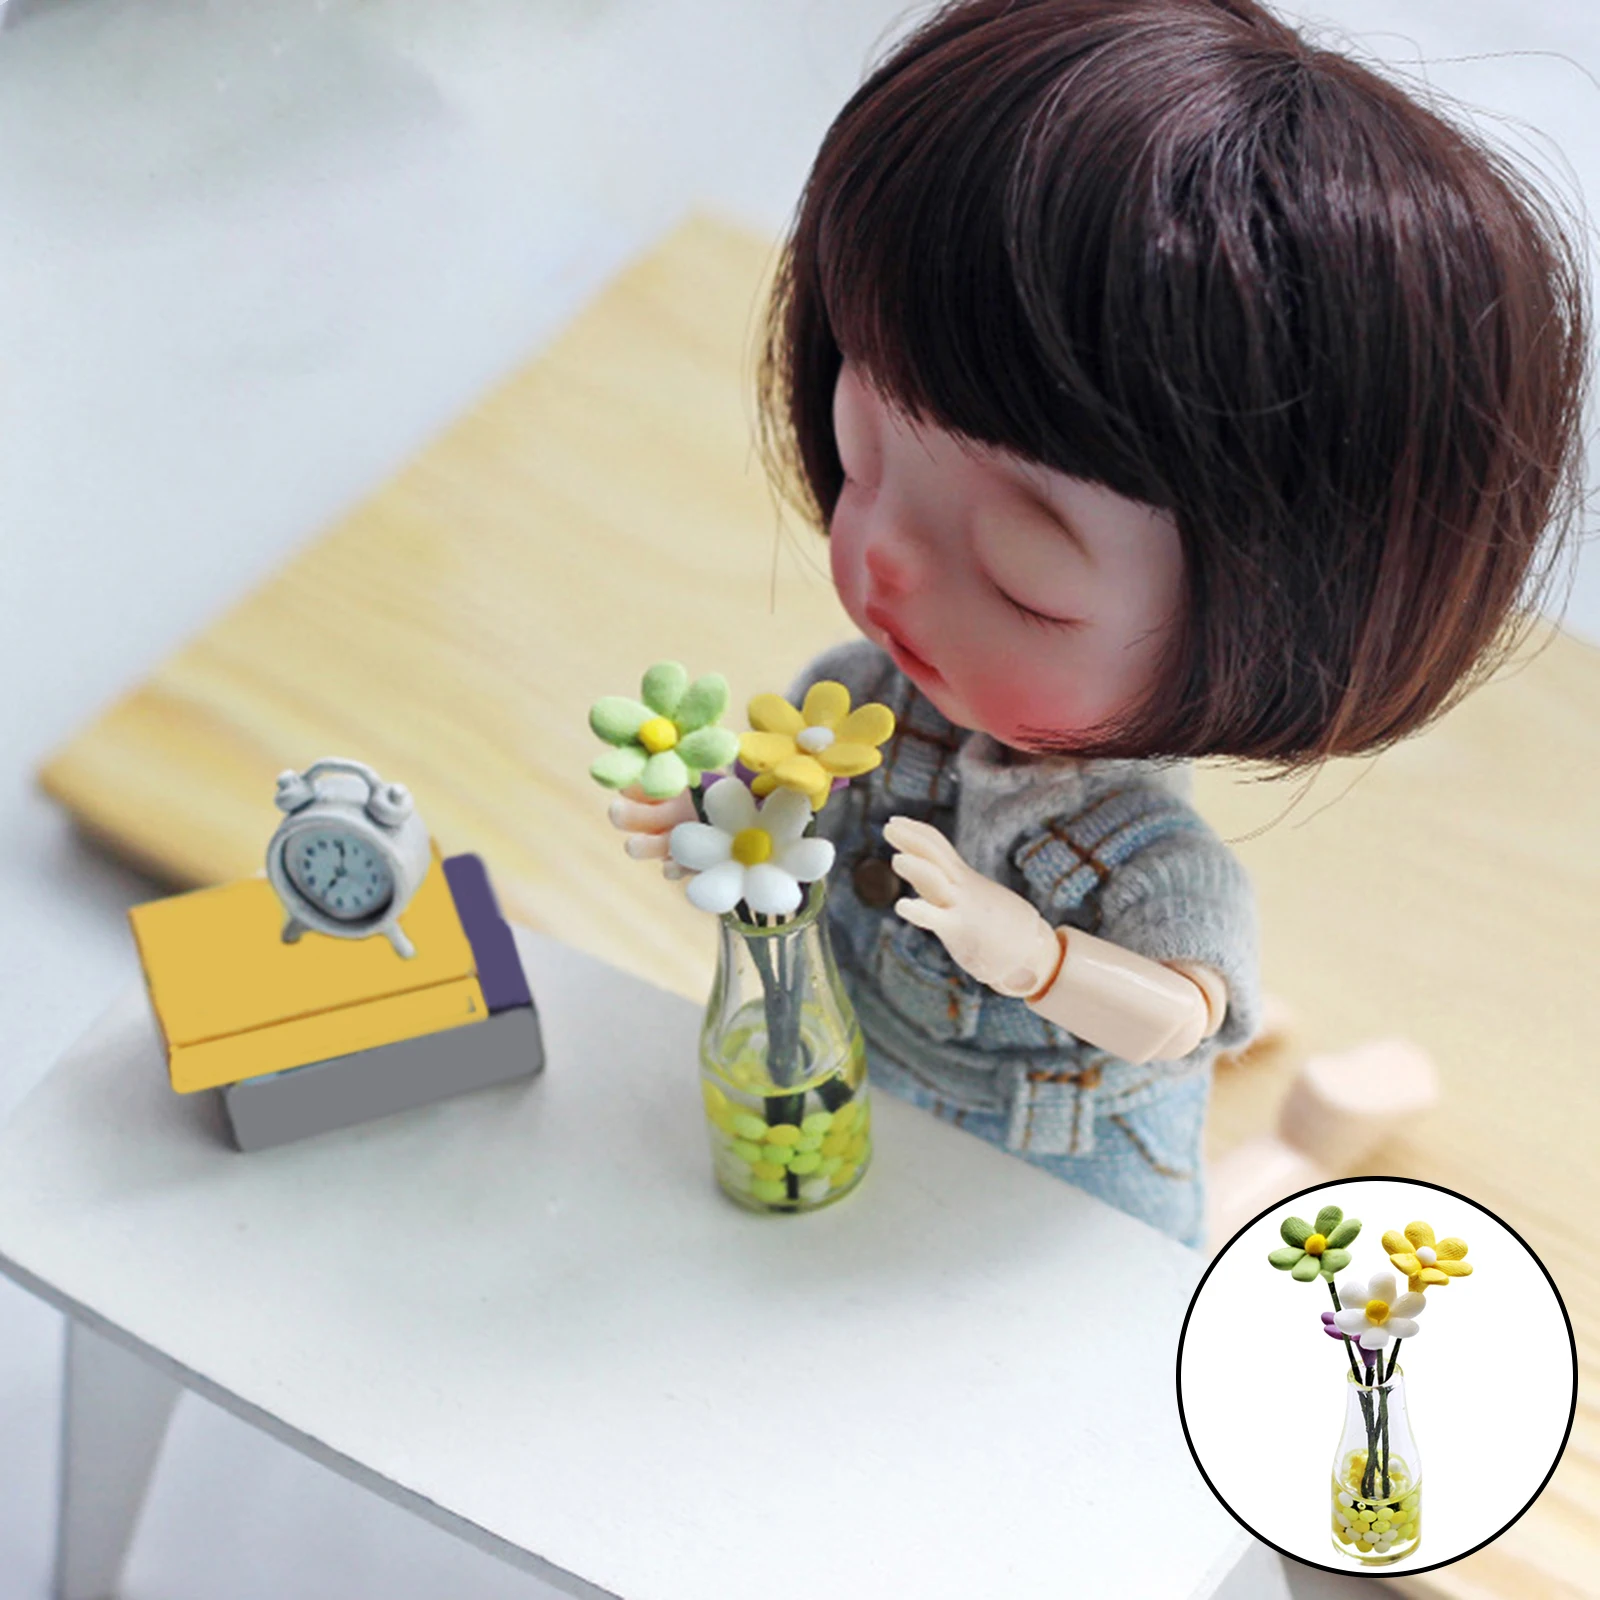 1 Piece 1:12 Dollhouse Miniature Accessory Mini Daisy Flower Arrangement Bottle Home Decor